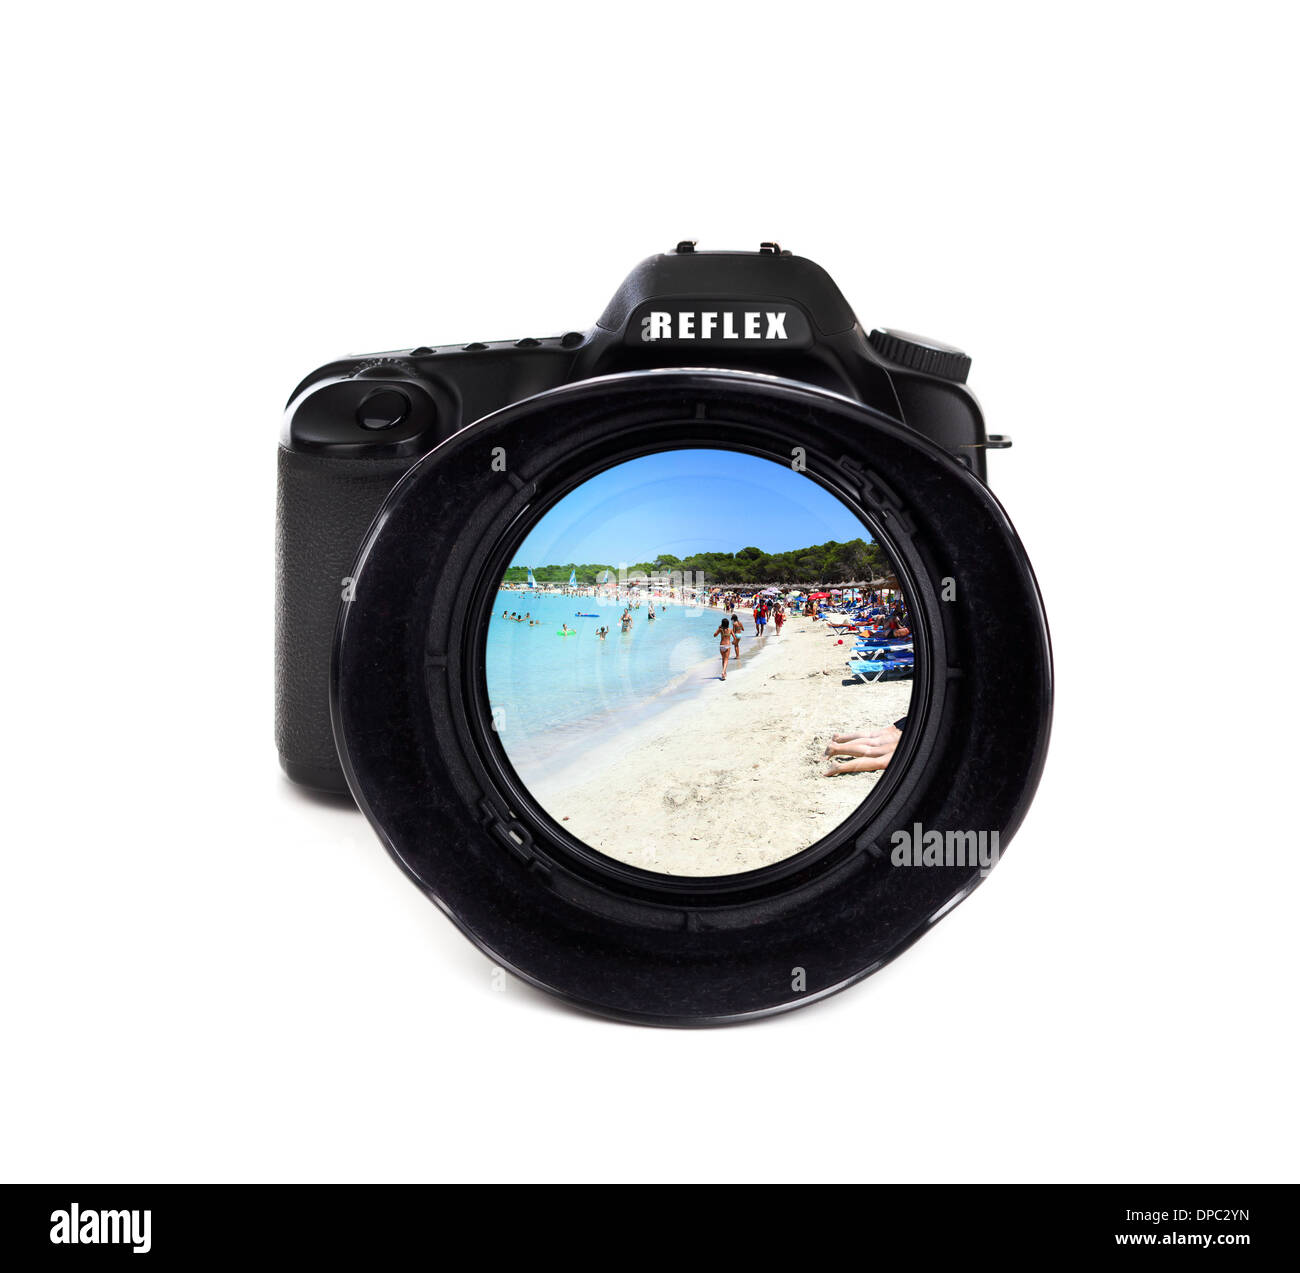 Digital photo camera isolated on white background Stock Photo